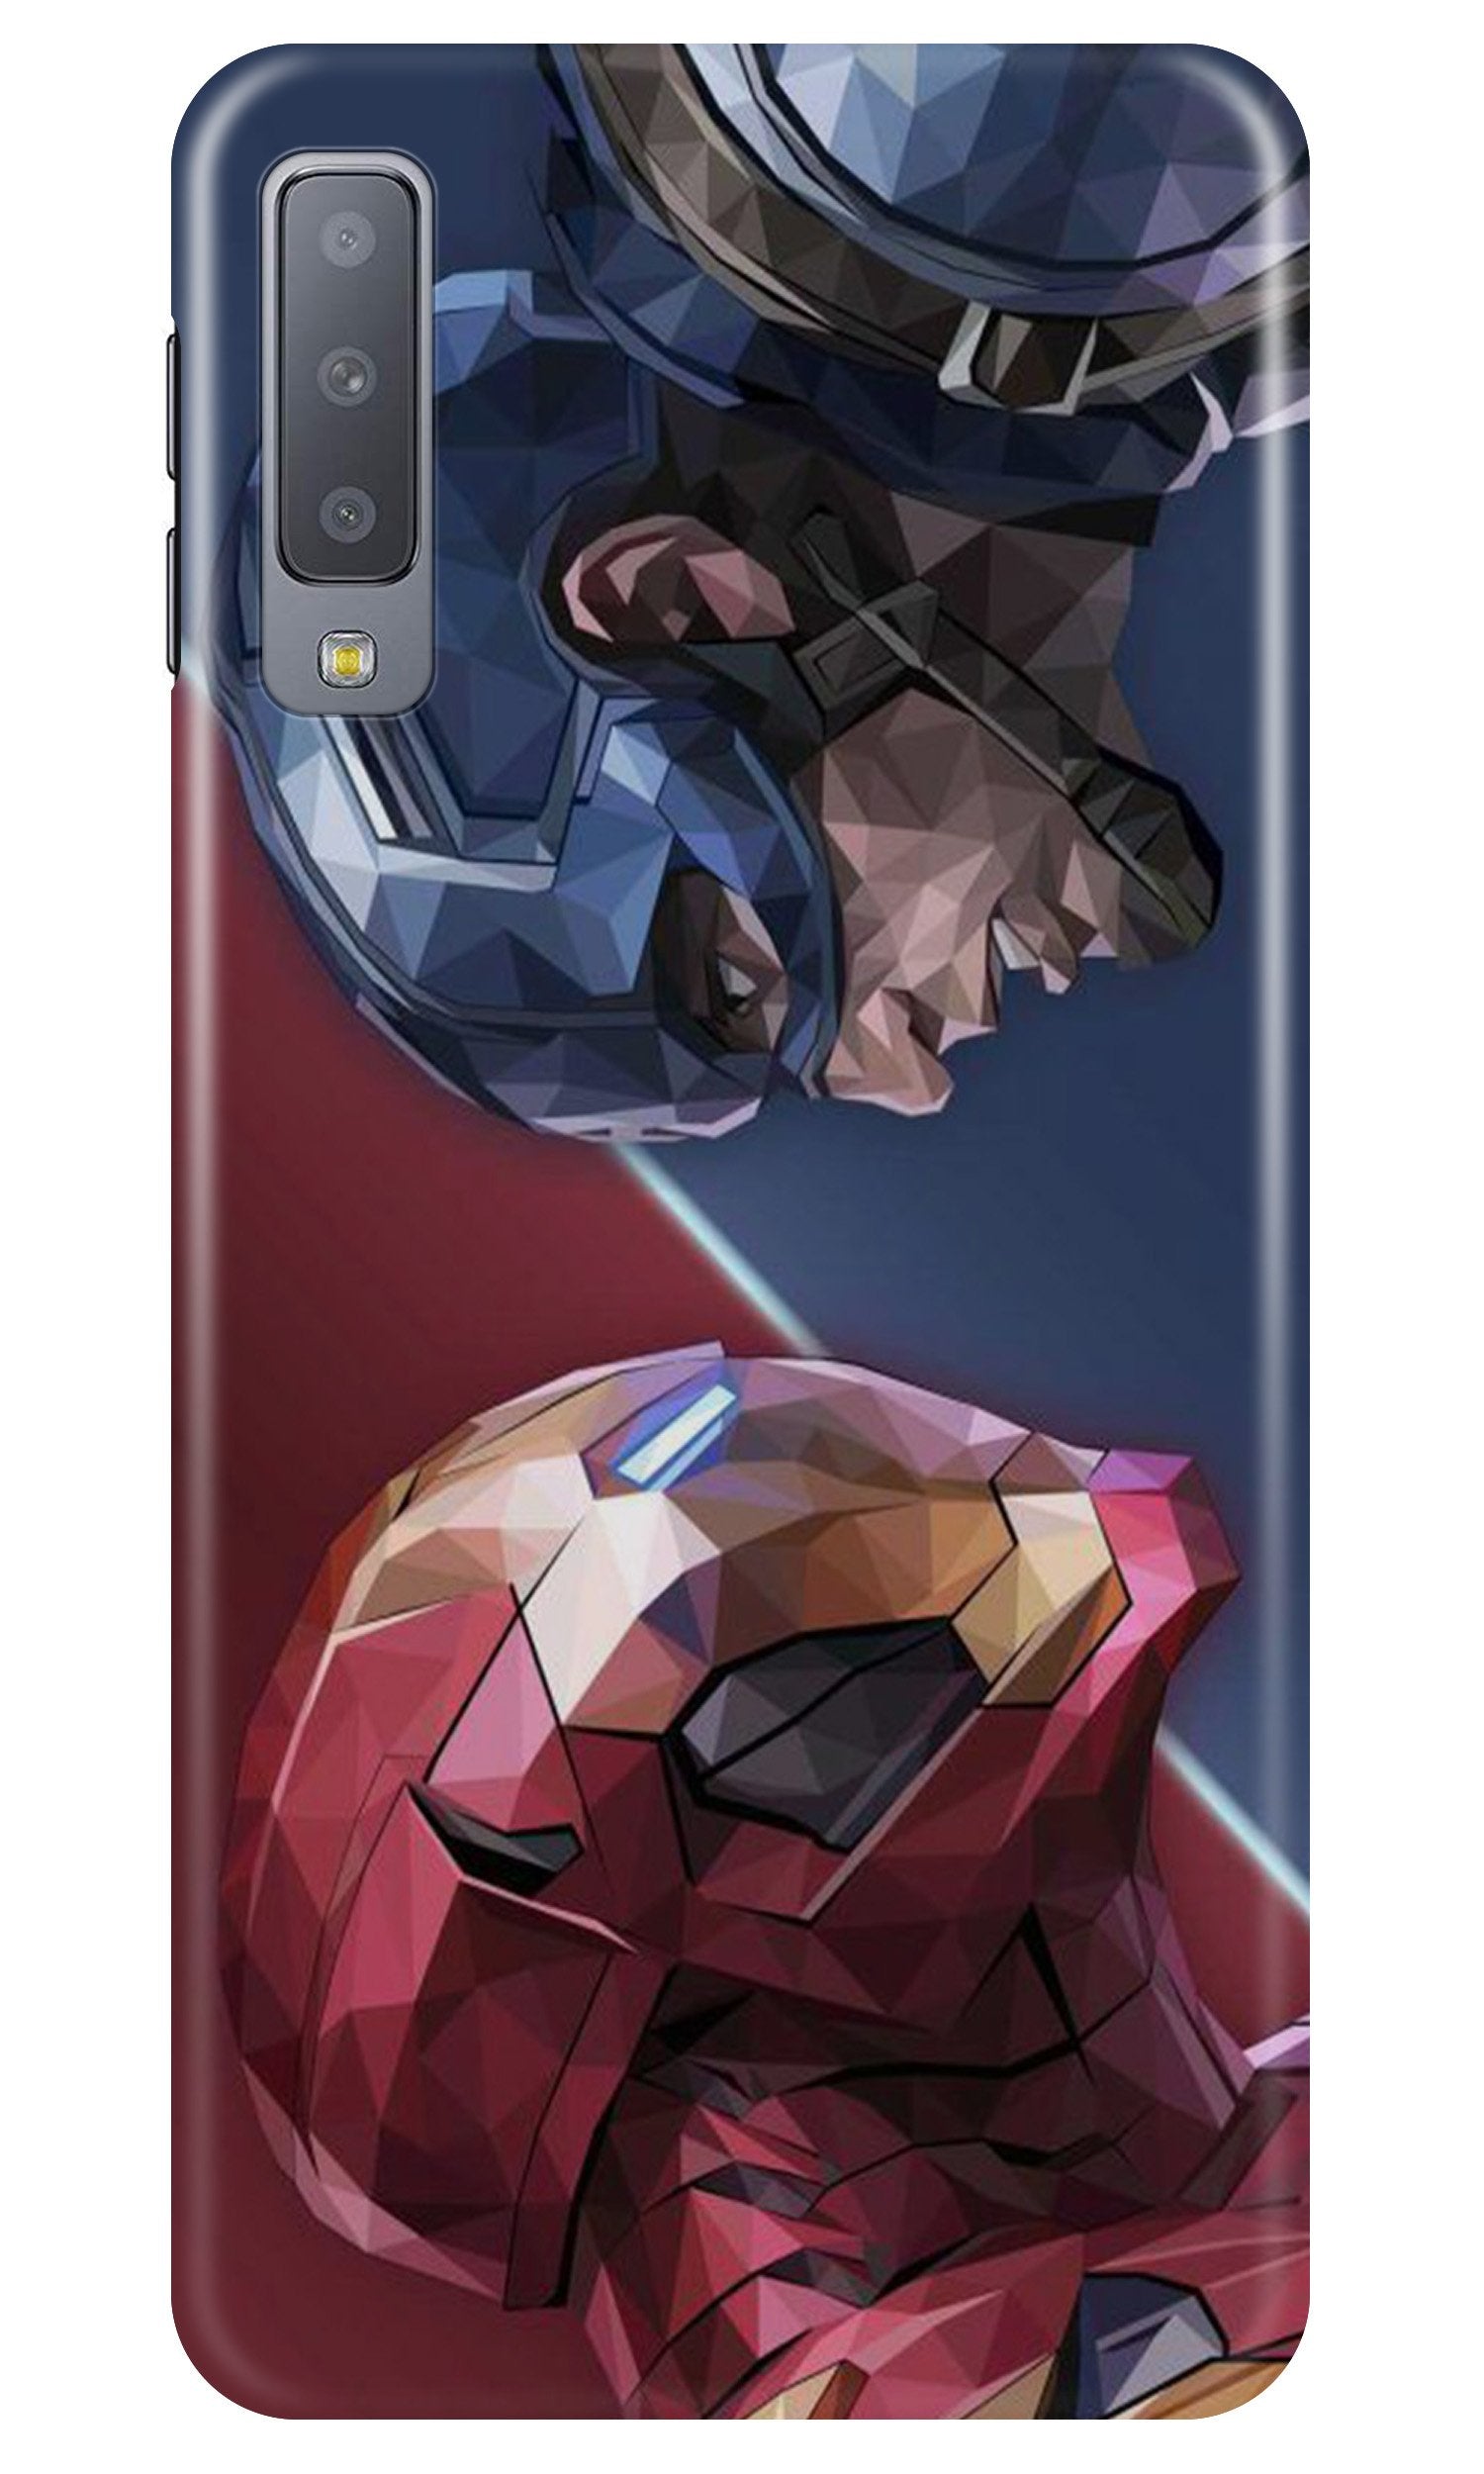 Ironman Captain America Case for Samung Galaxy A70s (Design No. 245)